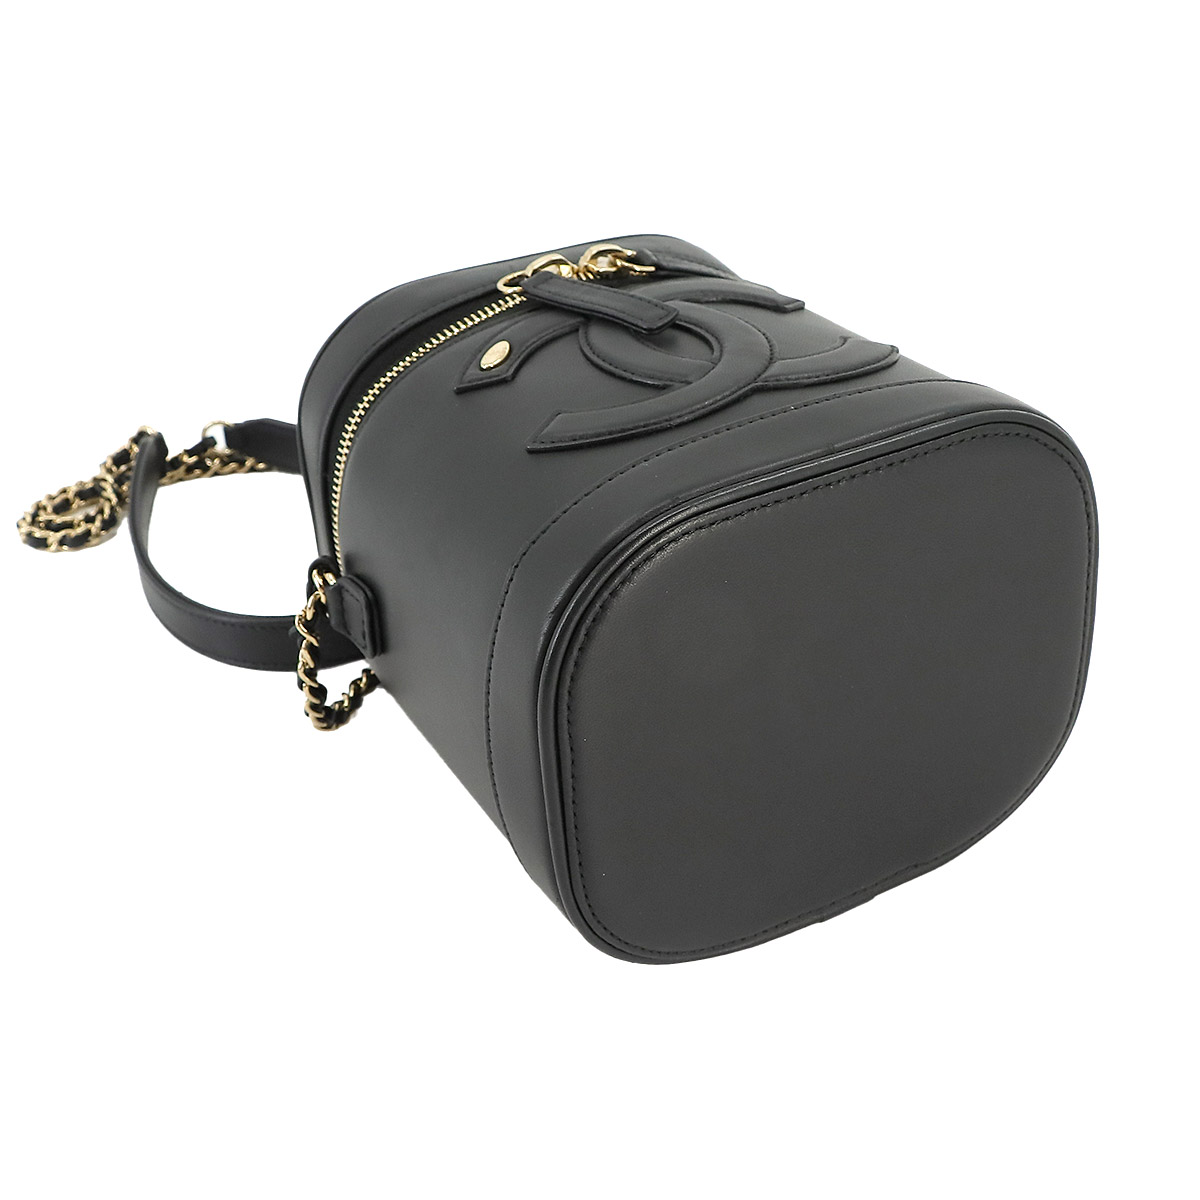  как новый Chanel CHANEL vanity 2way рука цепь сумка на плечо кожа черный AS0323 Gold металлические принадлежности Vanity Bag 90229561